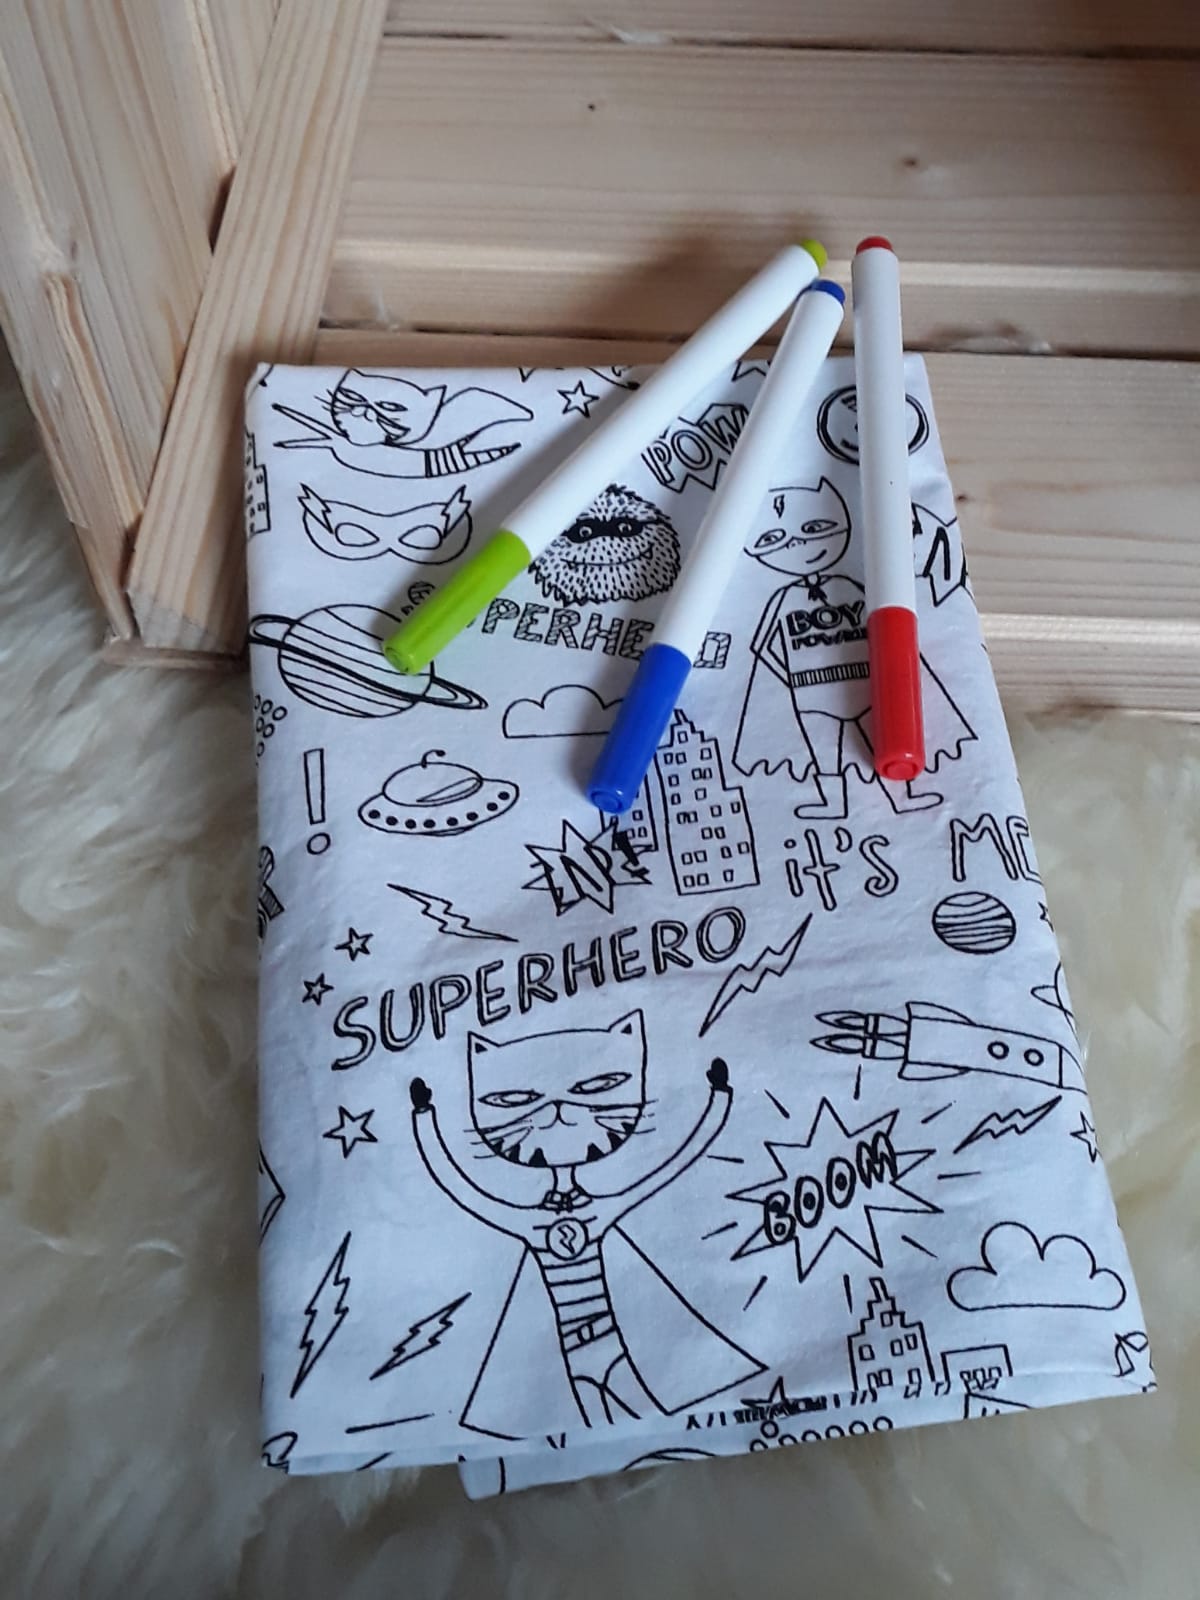 Kissenhülle Superhero
mit 3 Textilstiften (Farbe nicht frei wählbar) 13€
100% Baumwolle
Maschinenwaschbar bei 40°C